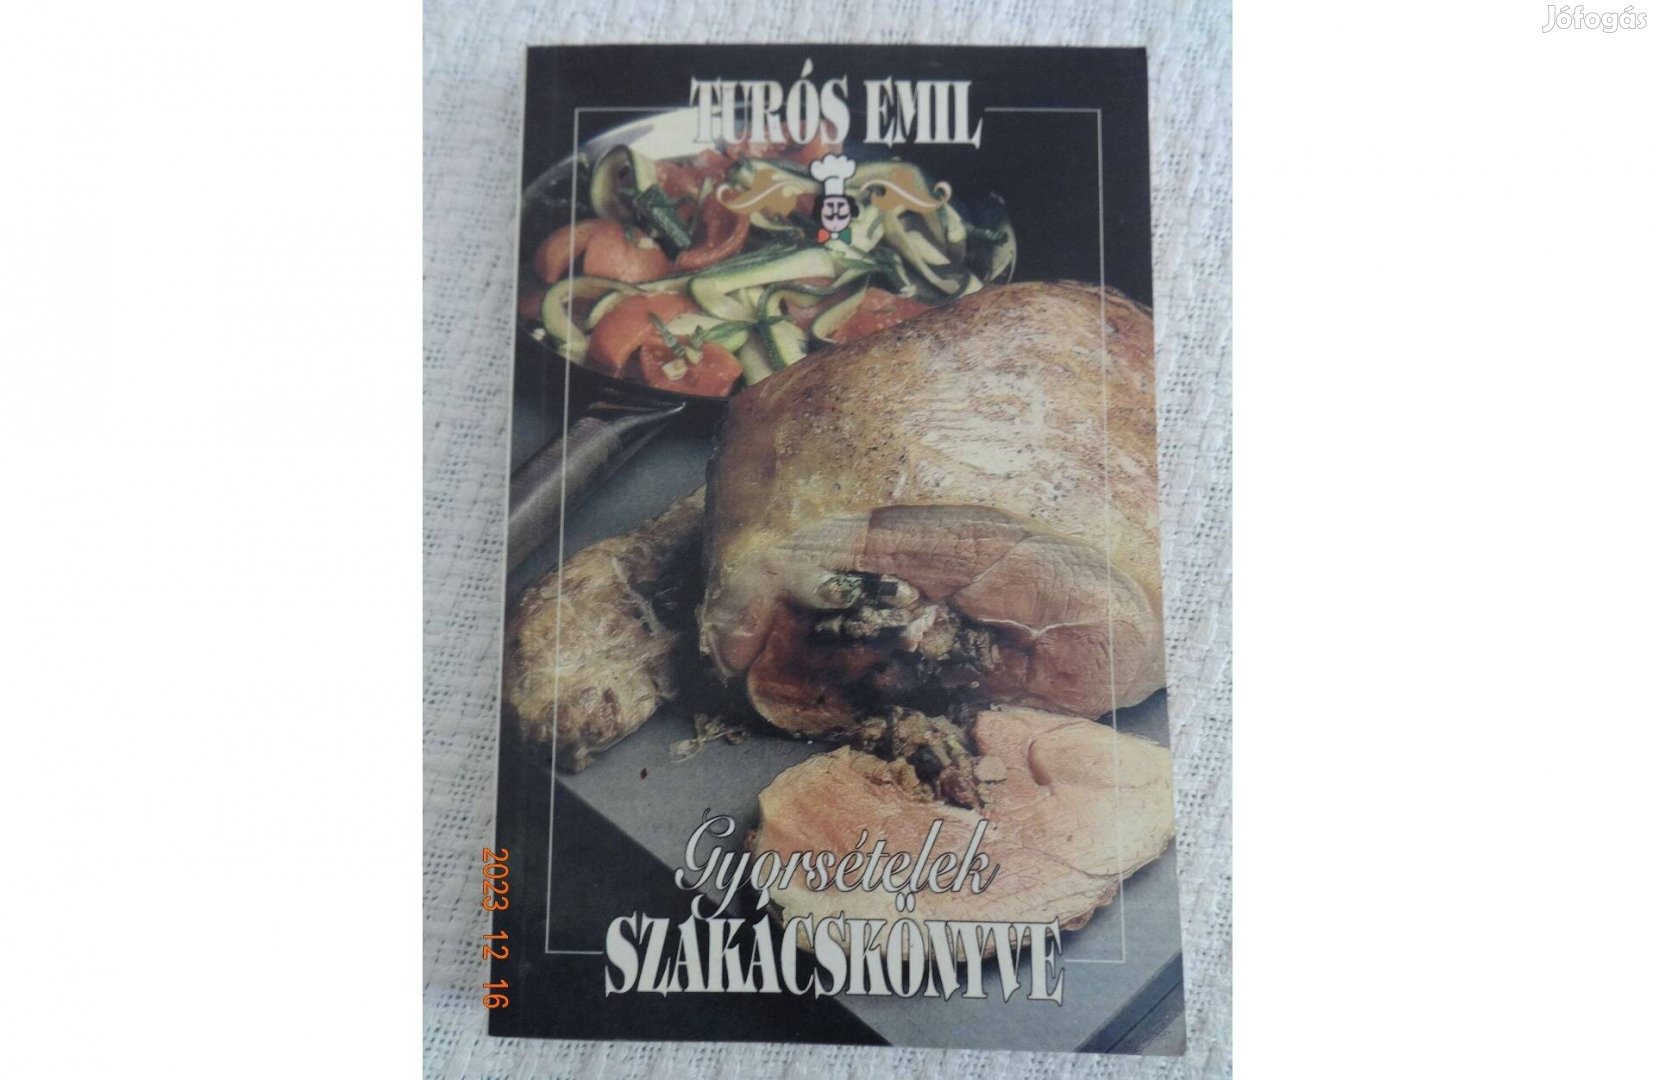 Turós Emil: Gyorsételek szakácskönyve